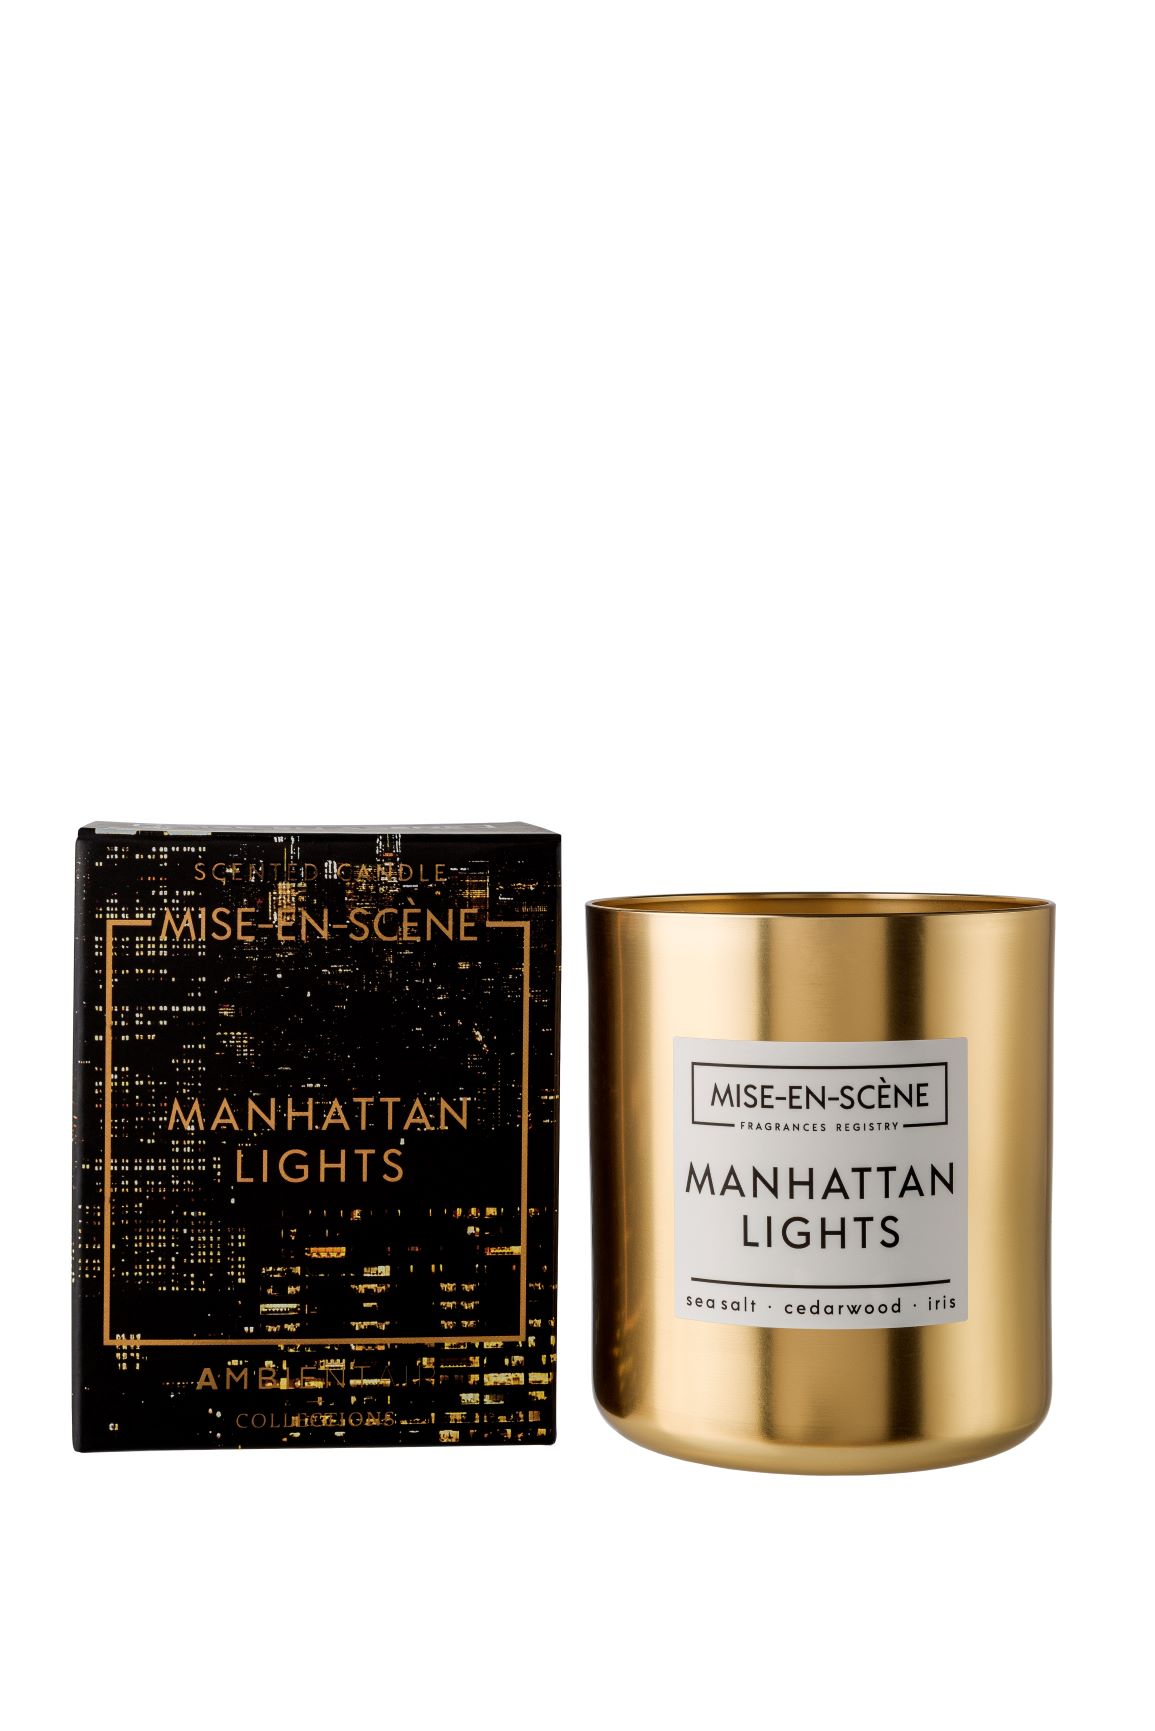 נר בכלי מתכת Mise-En-Scène Manhattan Lights